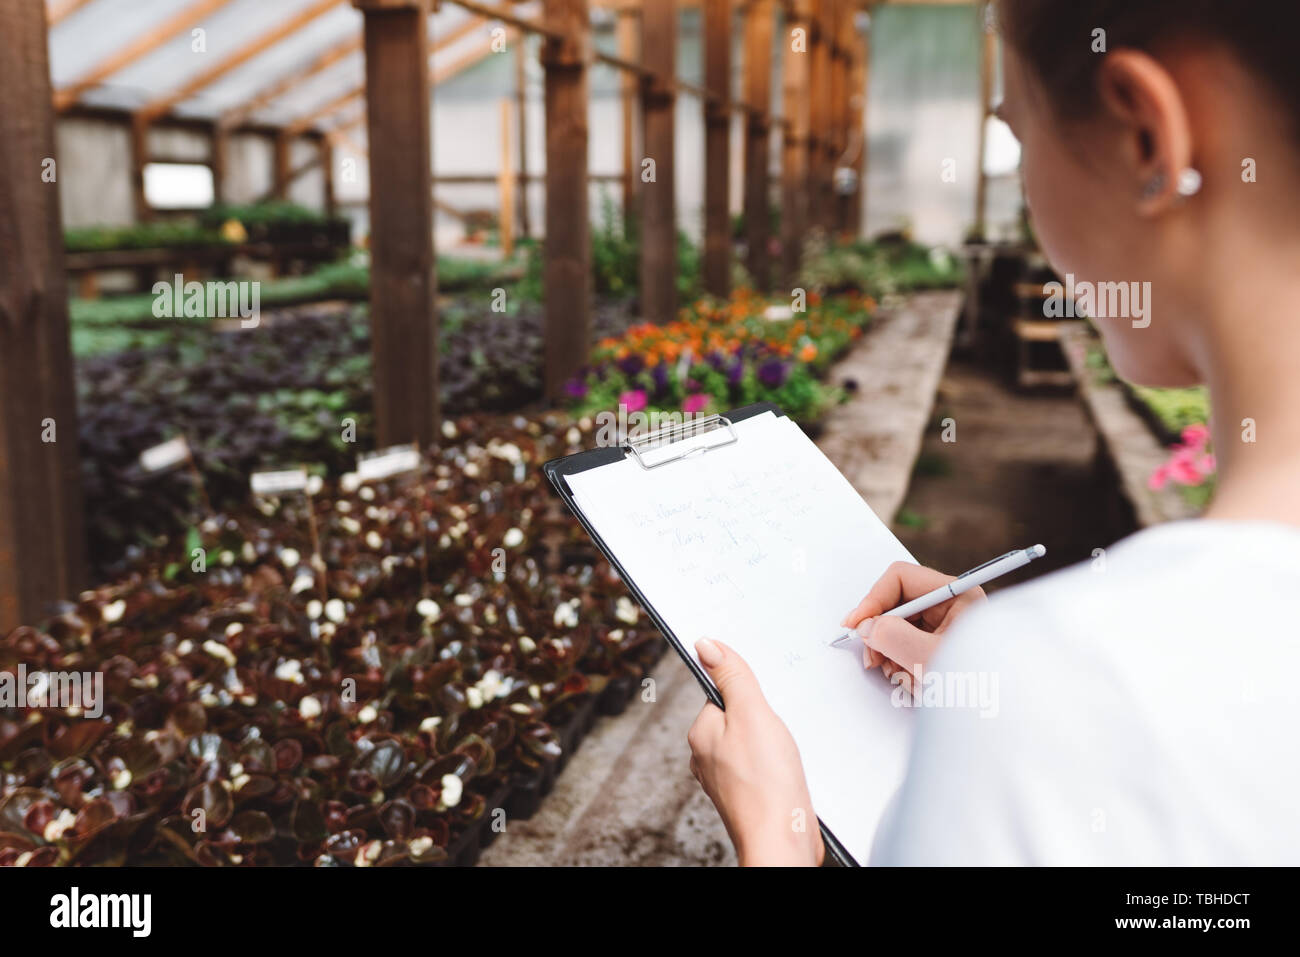 Donna professionale giardiniere lavora in serra. Fioraio interno serra giardino interno Foto Stock